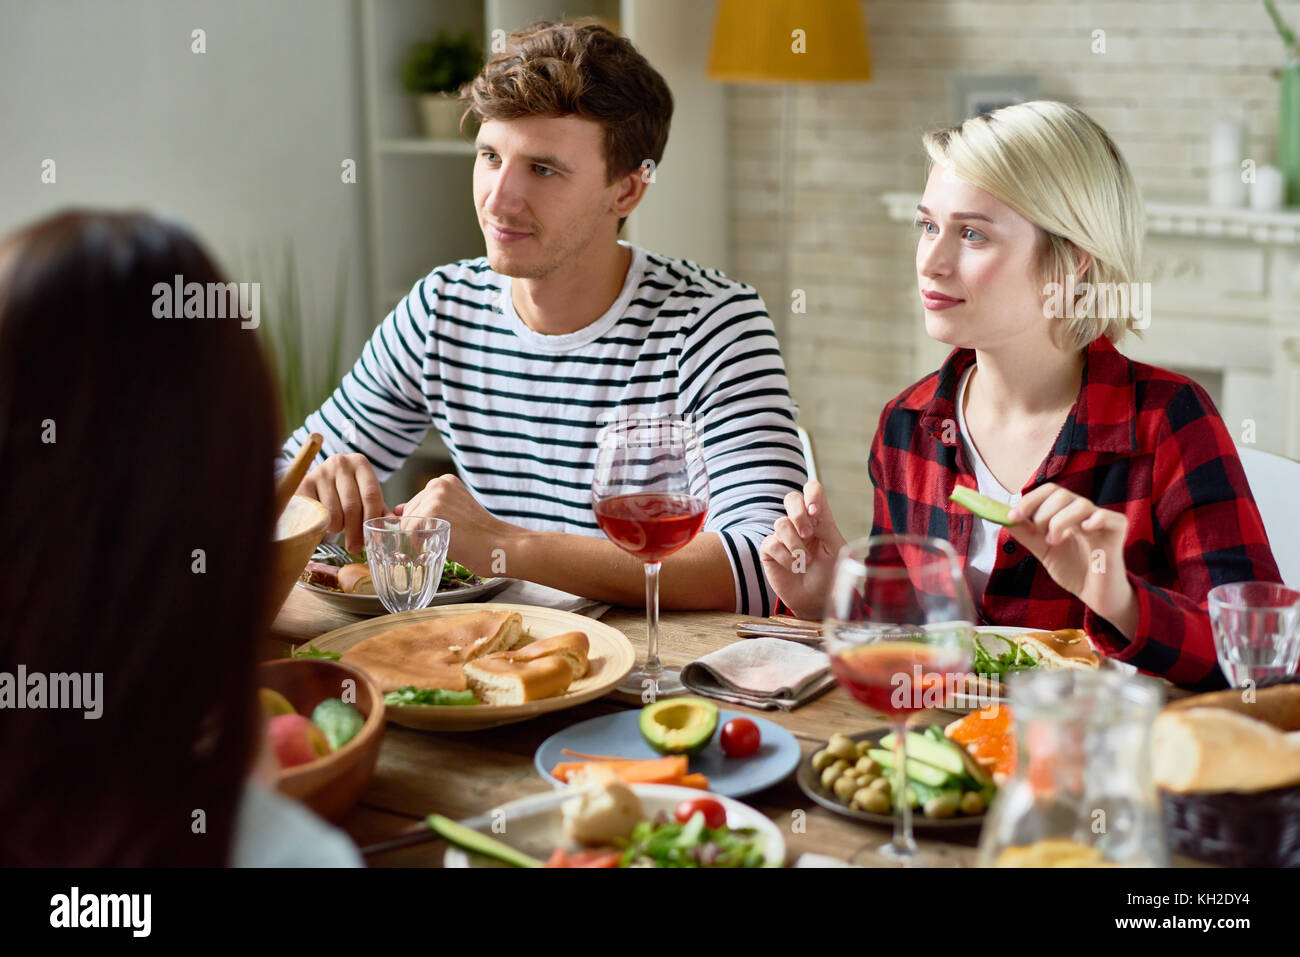 Ritratto di gruppo di giovani amici a cena insieme, riuniti al grande tavolo con deliziosi piatti su di esso, concentrarsi sul giovane ascoltando la conversazione Foto Stock